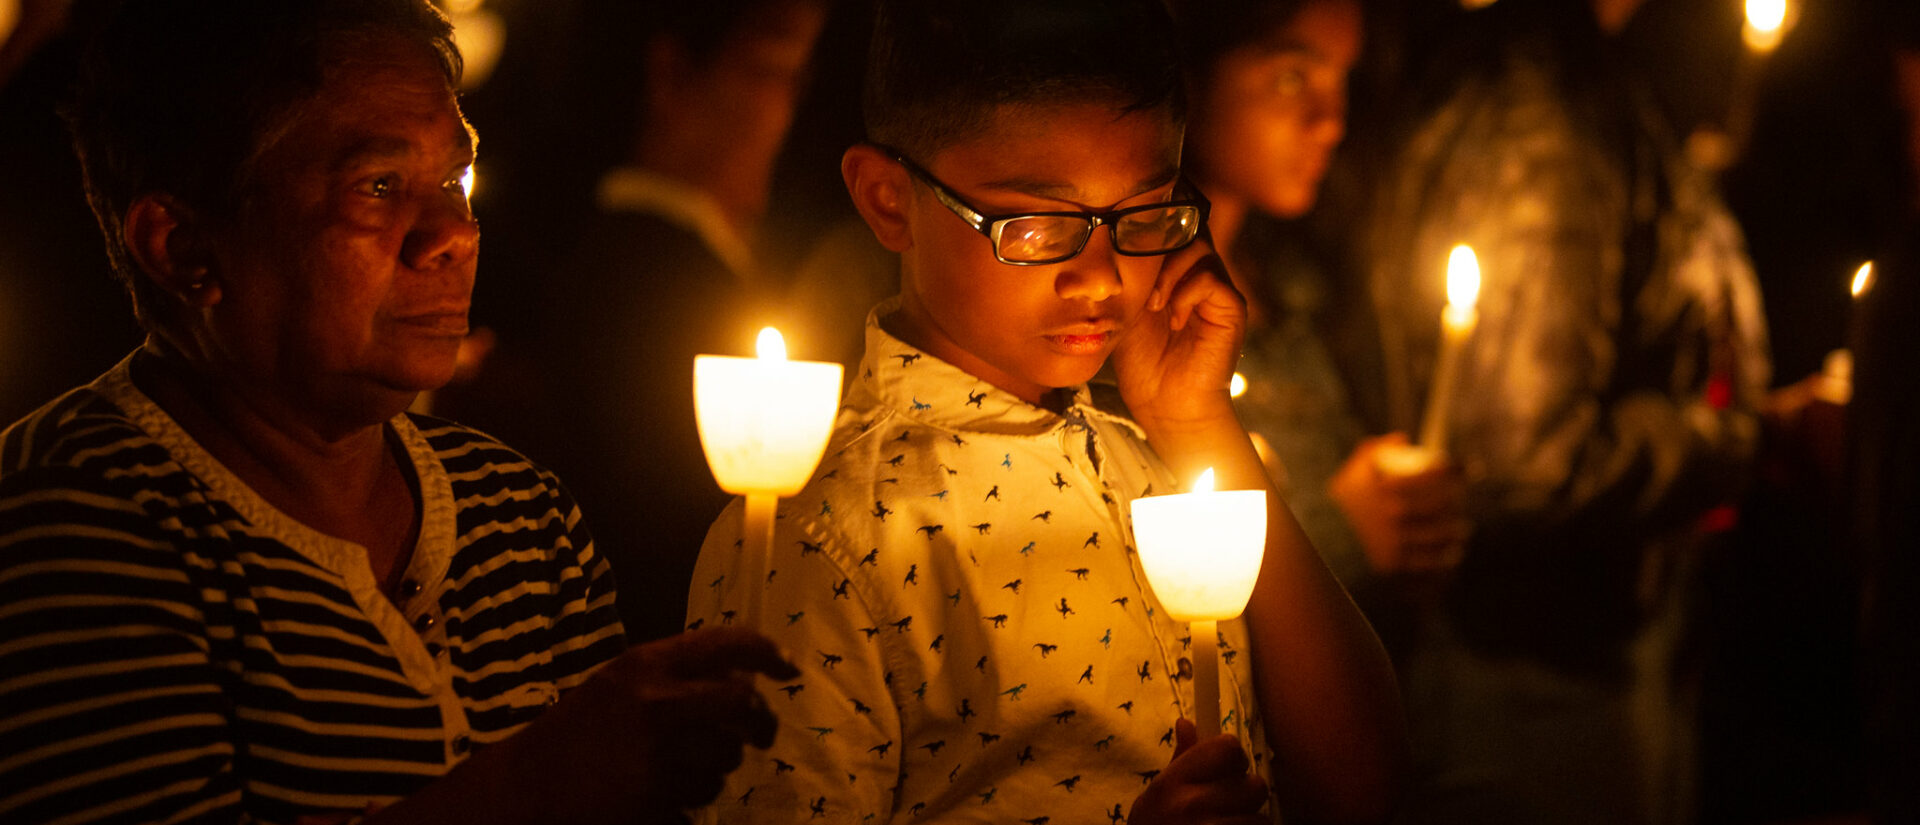 Commémoration des attentats de Pâques, au Sri Lanka | © Phil Murphy/Flickr/CC BY-SA 2.0